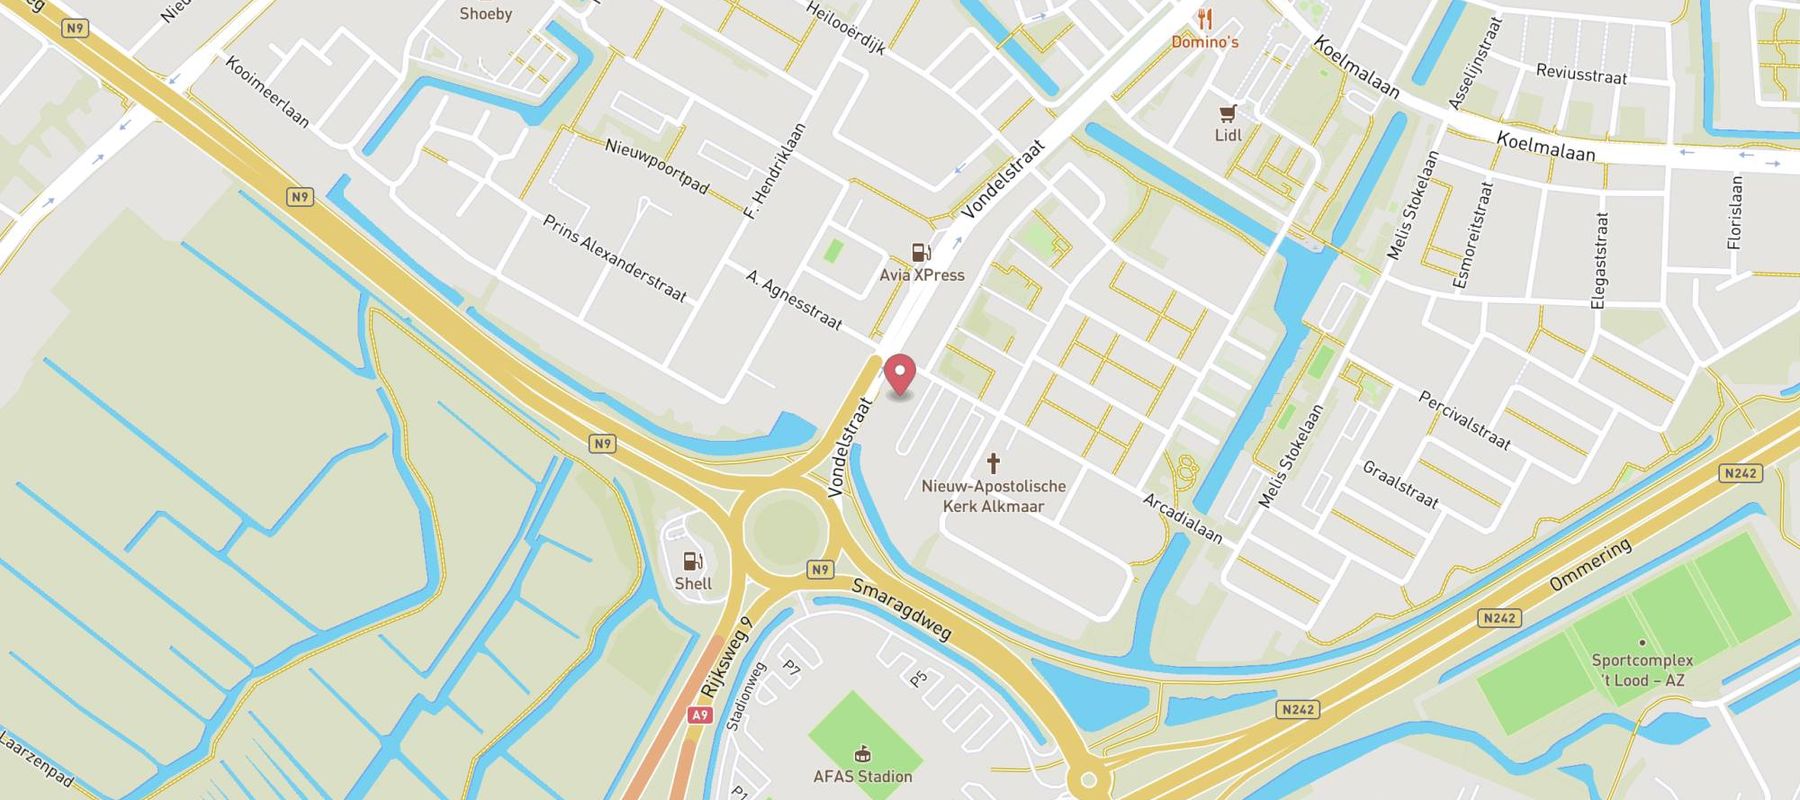 Hotel Alkmaar map